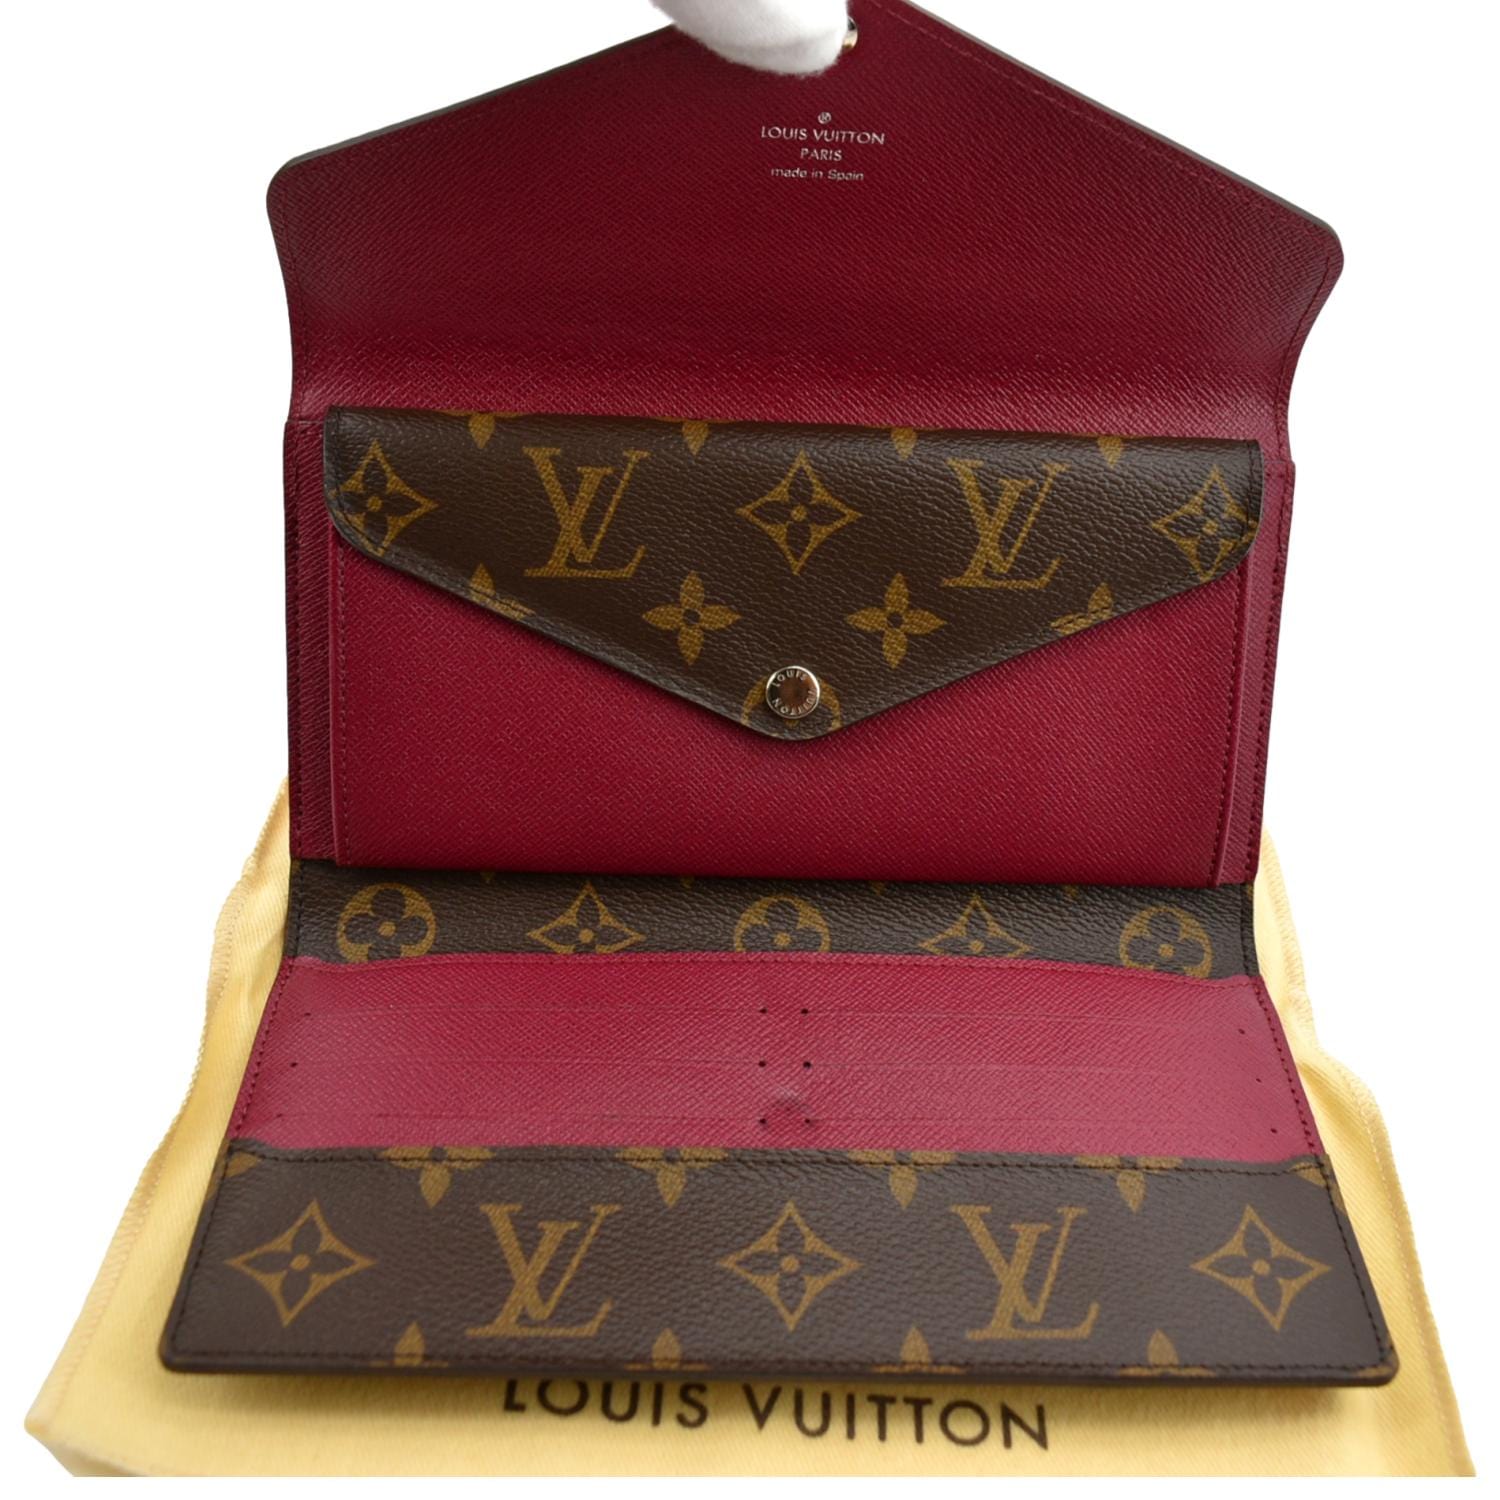 Louis Vuitton - Lou Wallet - Monogram - Fuchsia - Women - Luxury